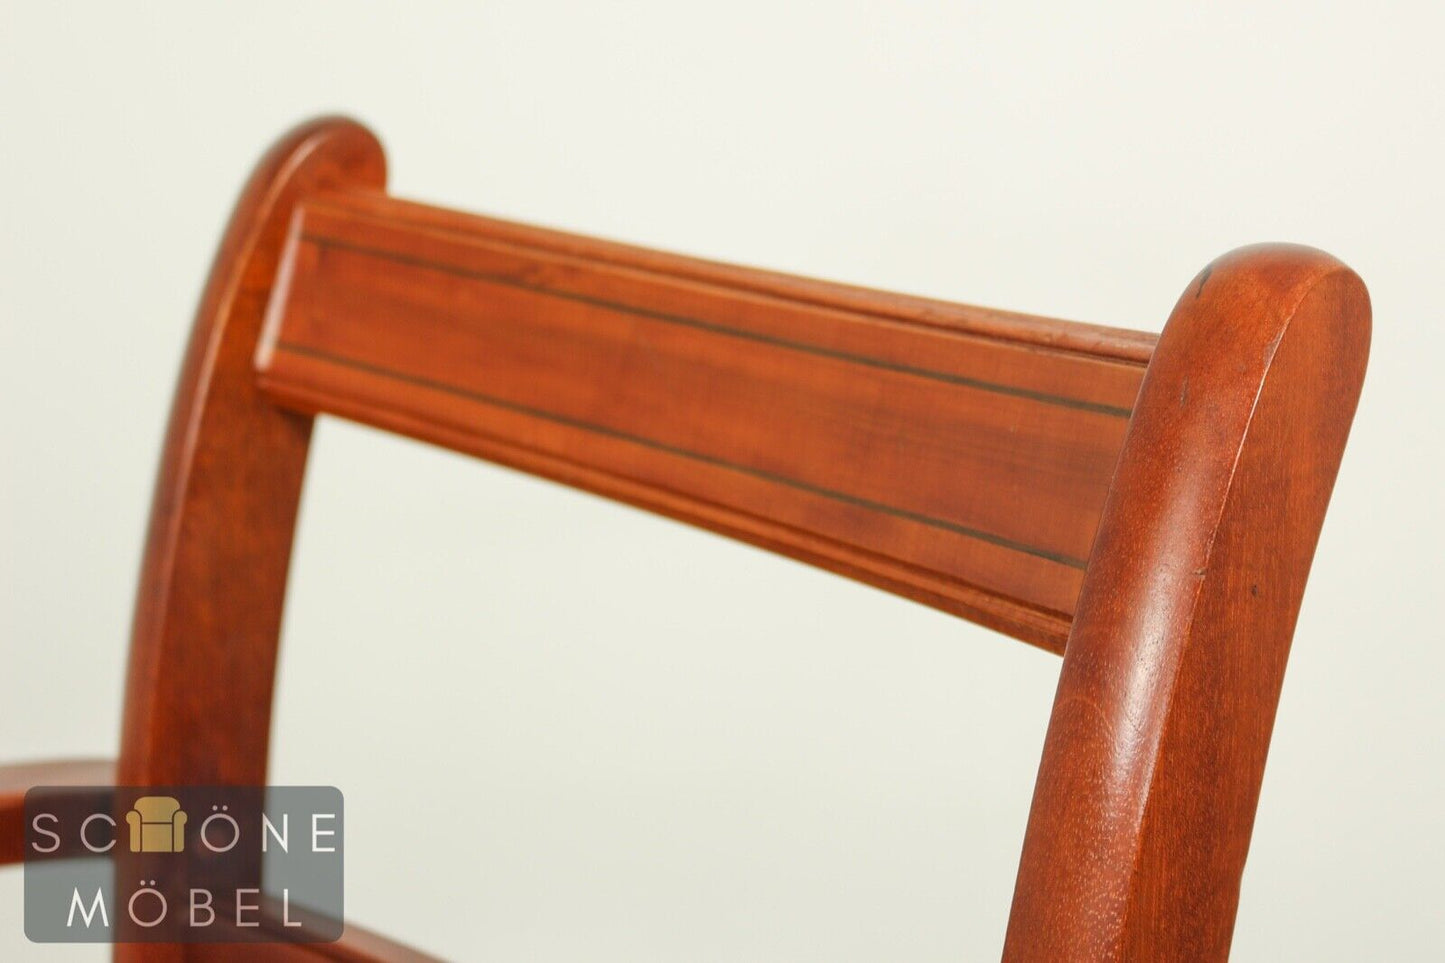 5x Esszimmerstühle Stühle Englisches Design Antik Stil Stuhl Essstuhl Chair